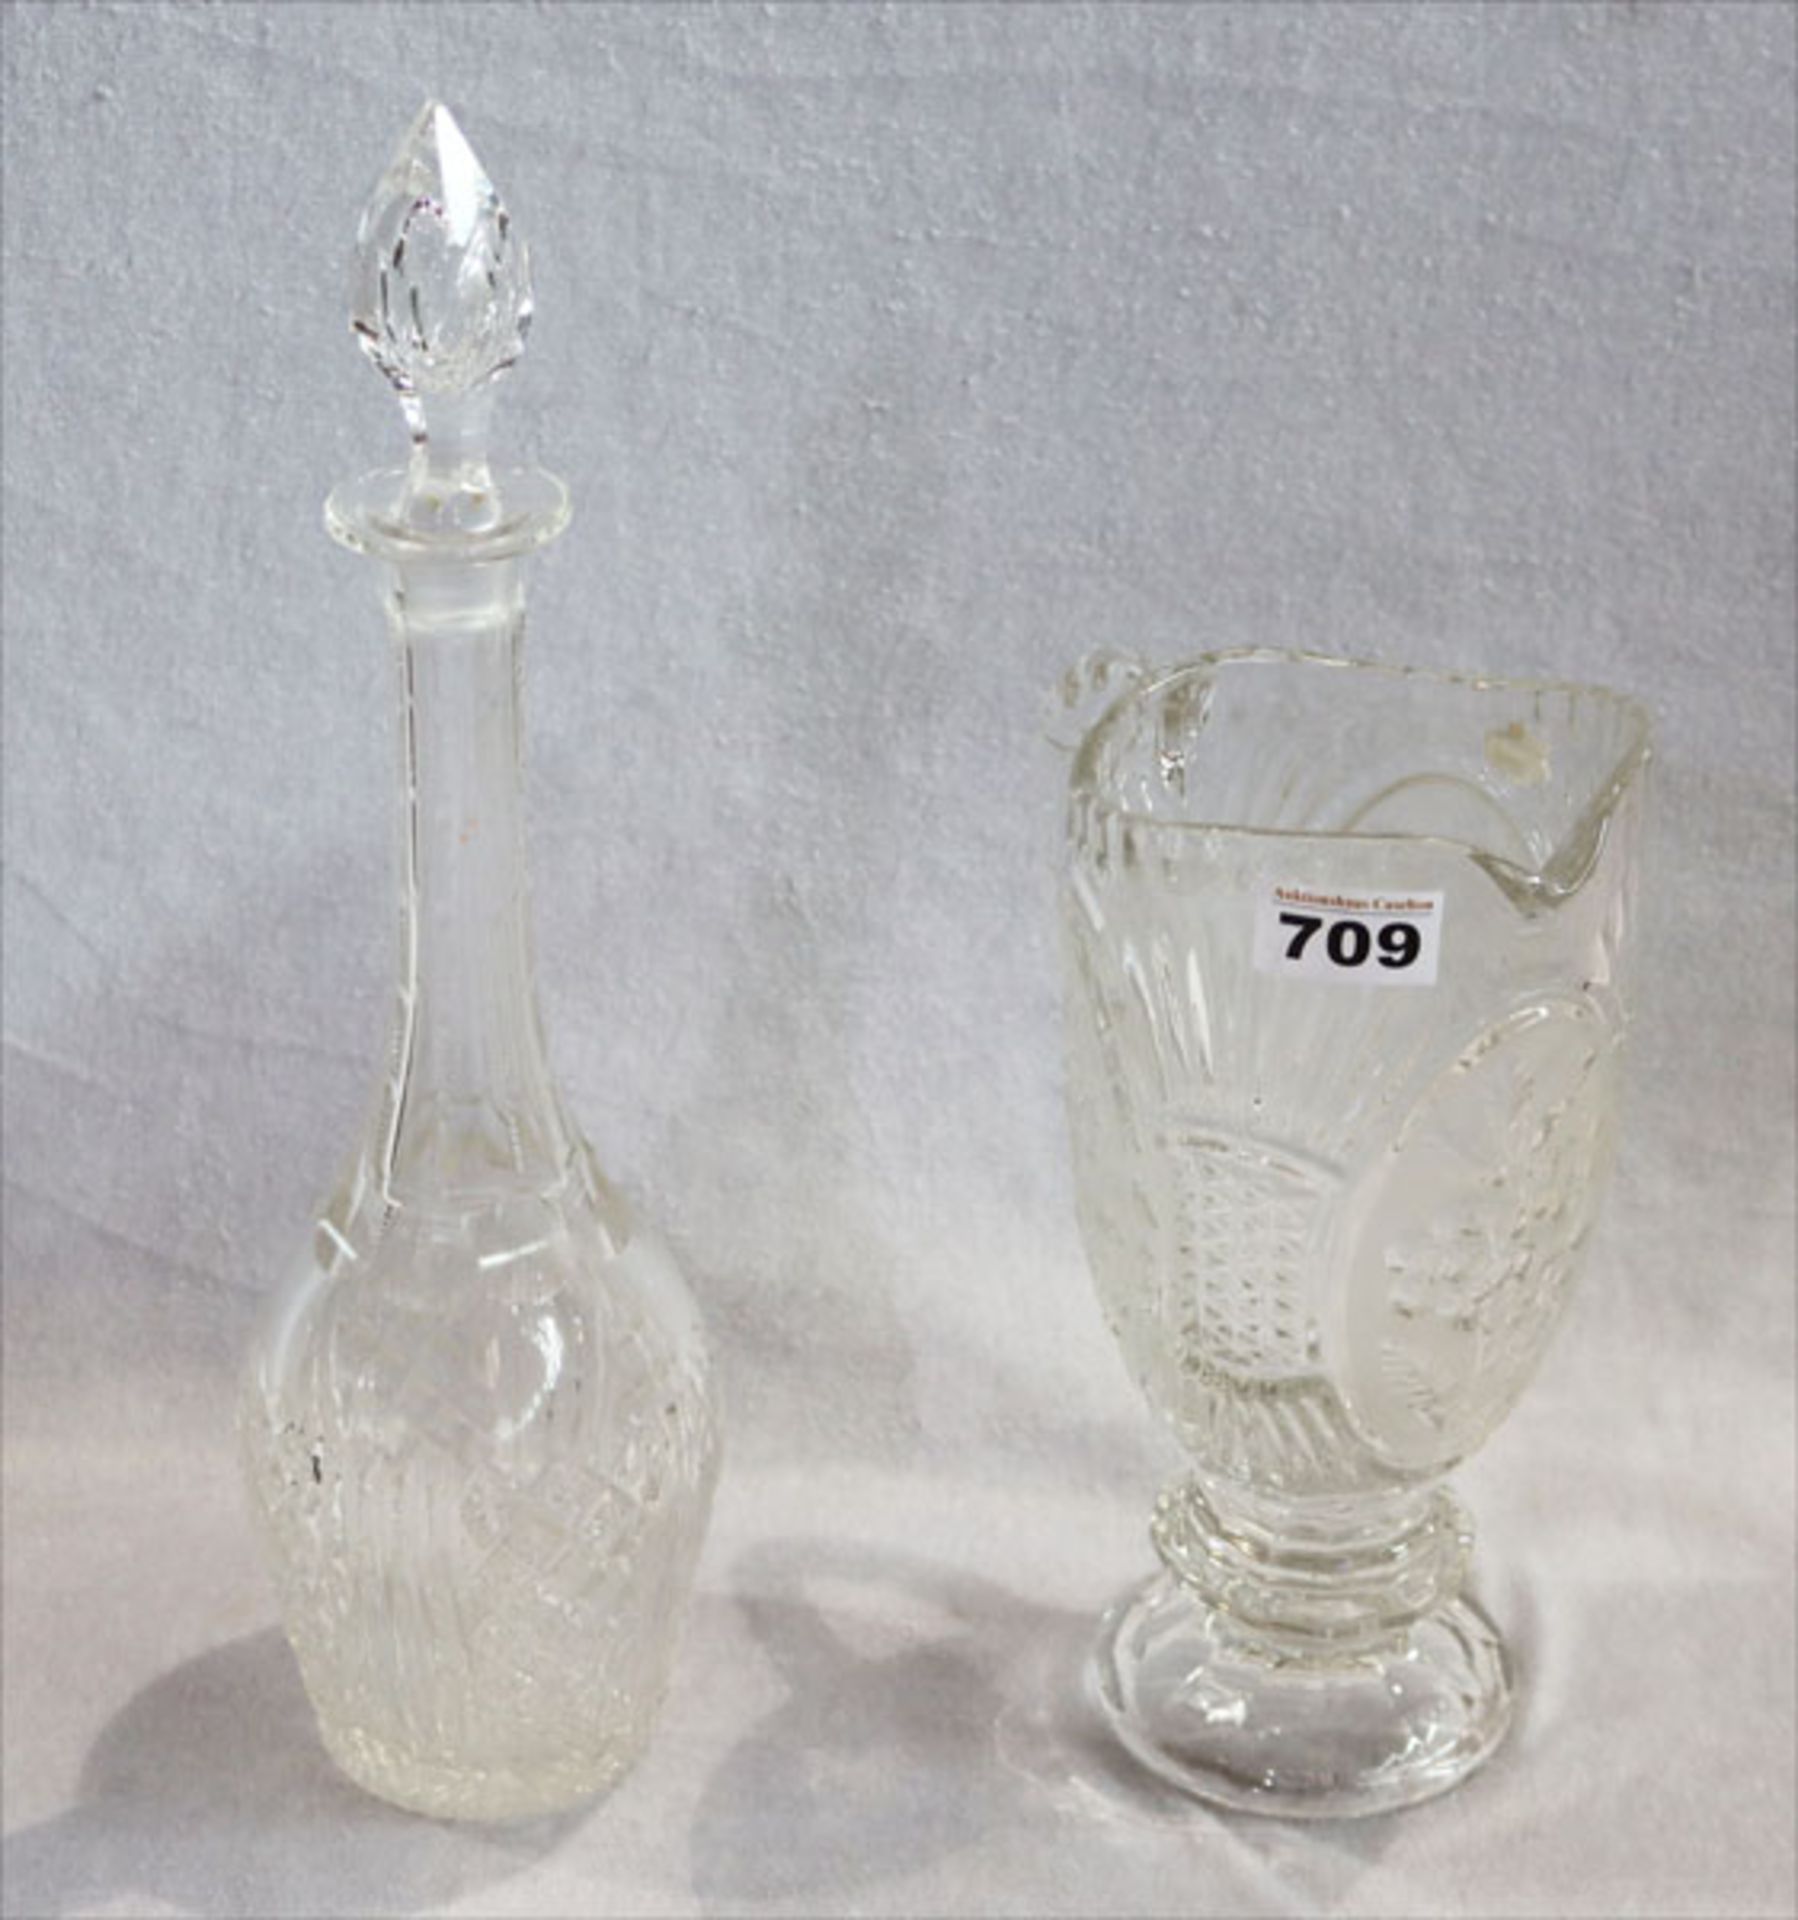 Glas Karaffe mit Schliffdekor, H 41 cm, und Glas Henkelkrug, teils mattiert, H 26 cm,